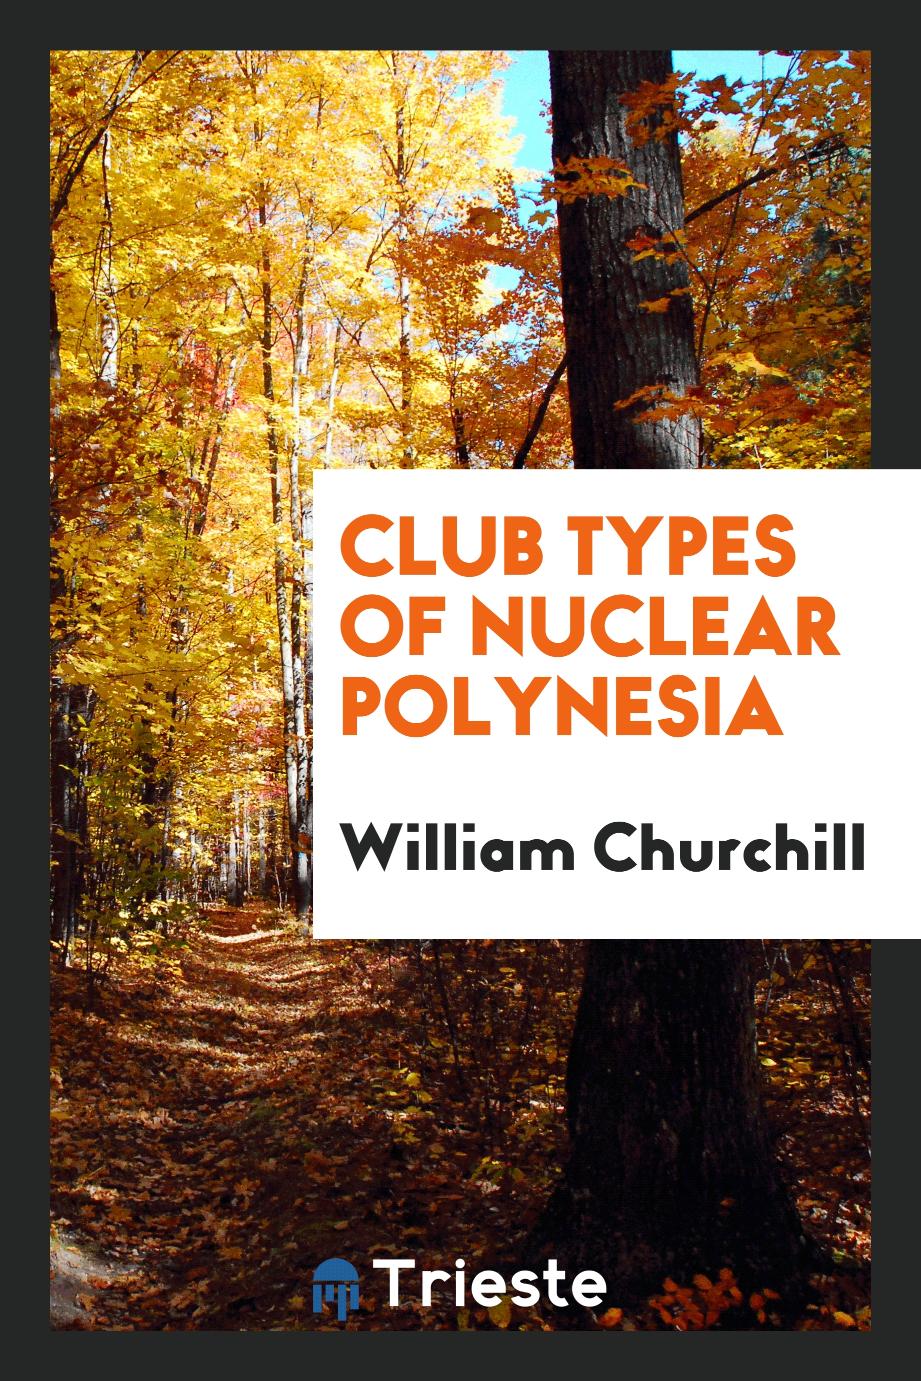 William Churchill - Club types of Nuclear Polynesia